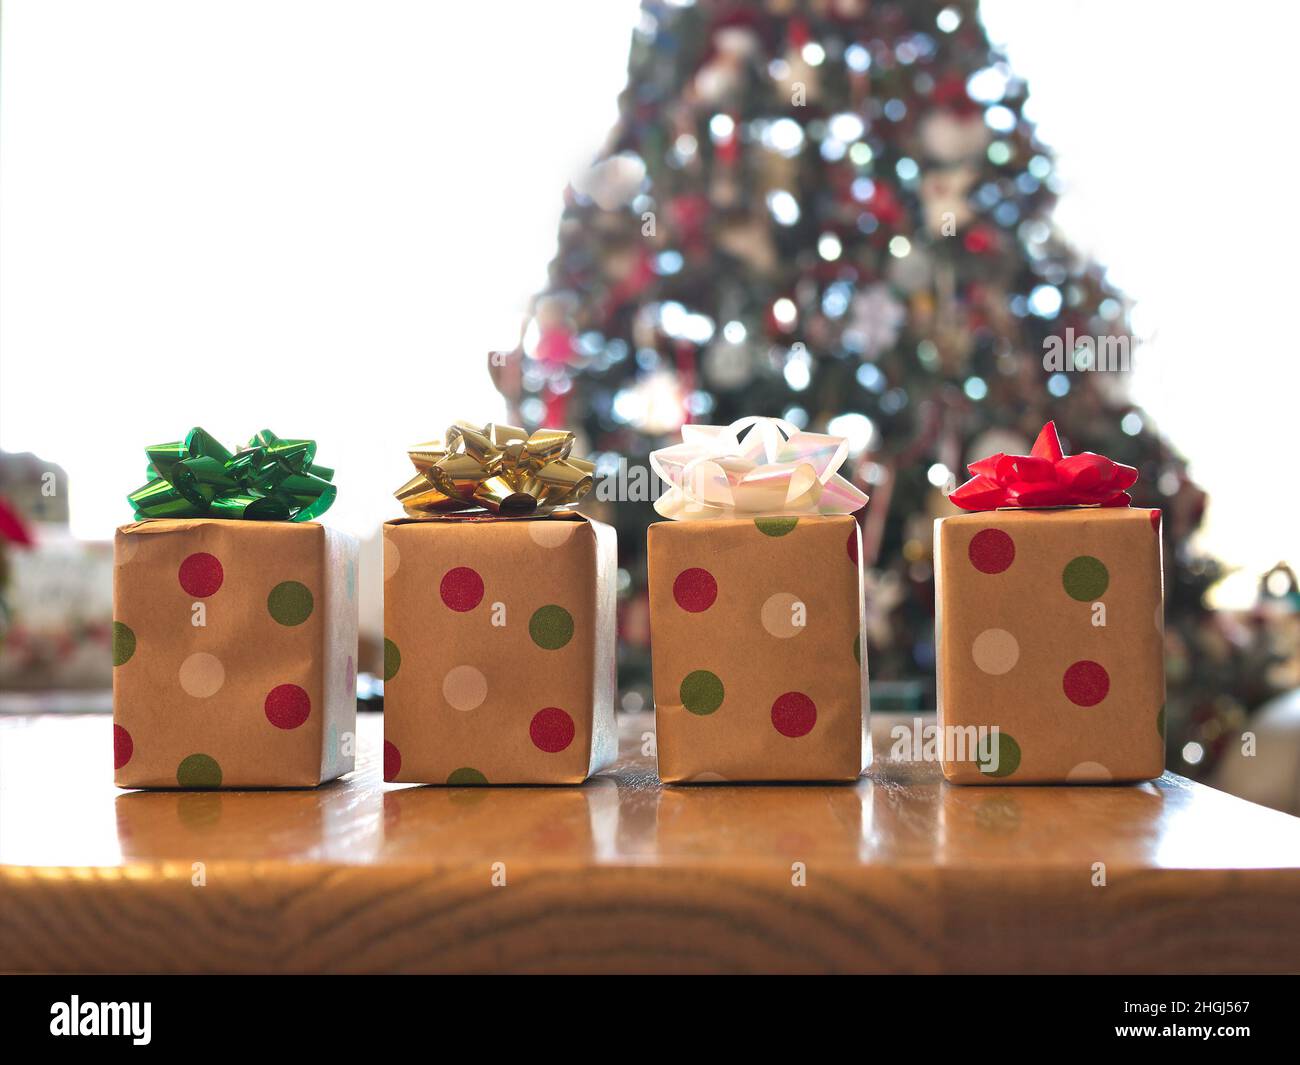 Quattro scatole regalo splendidamente avvolte su tavola di legno con archi colorati, con albero di Natale decorato sullo sfondo. Foto Stock